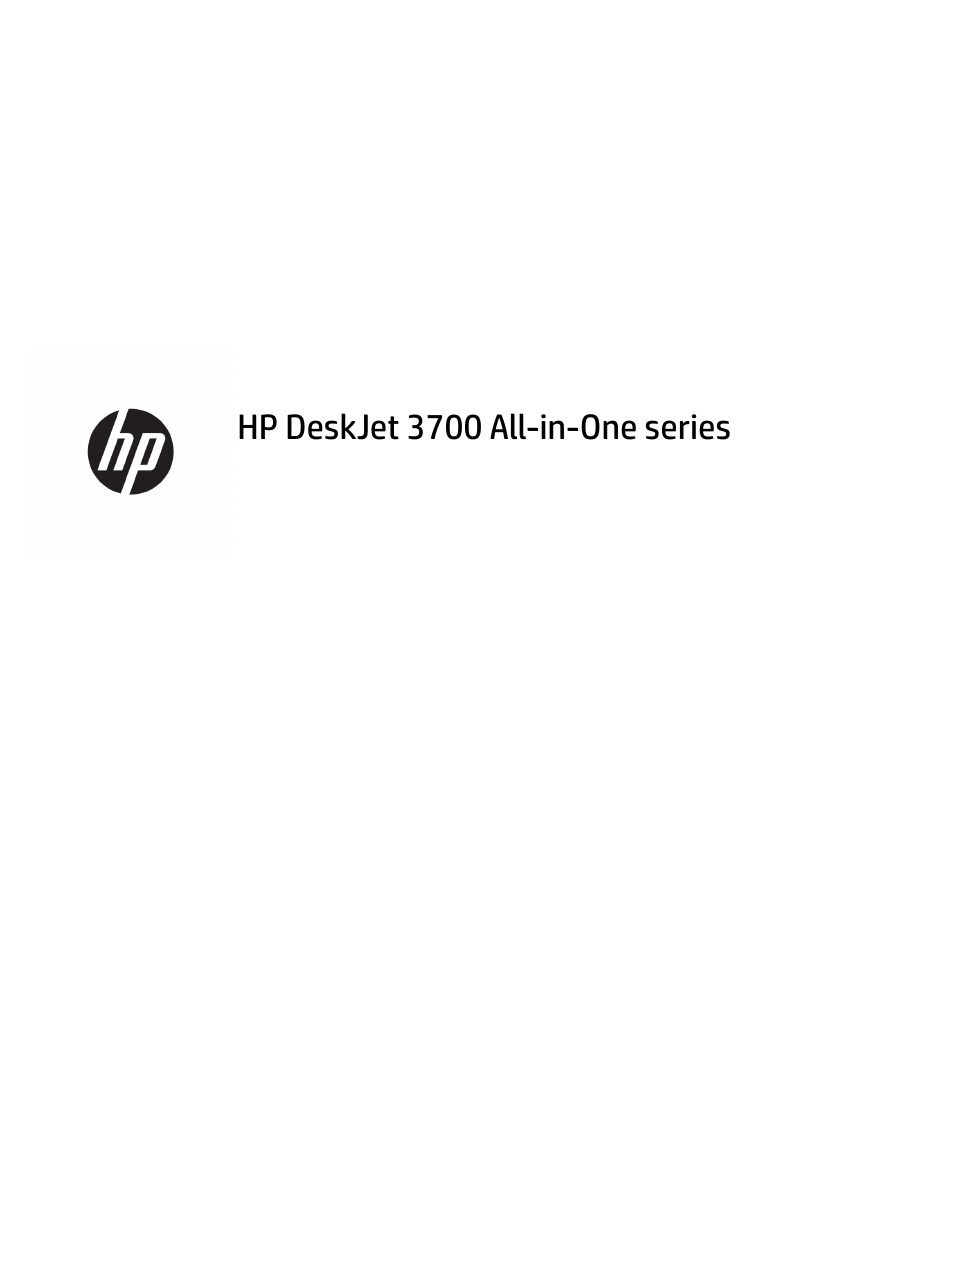 HP DeskJet 3700 User Manual | 118 pages